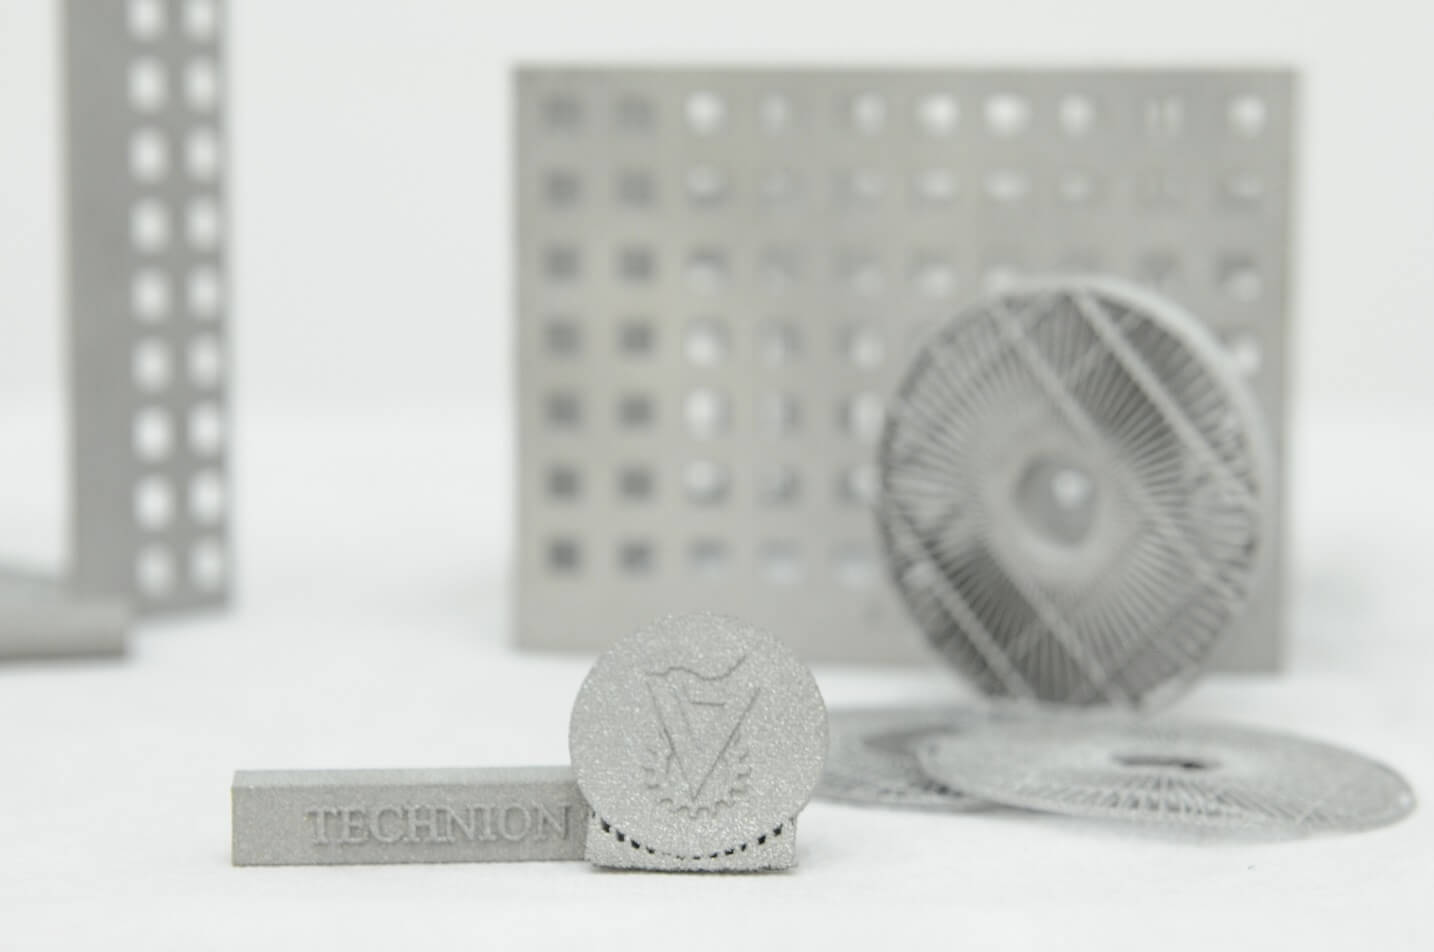 מוצרים שהודפסו במדפסת התלת ממדית במכון המתכות בטכניון. צילום: שרון צור, דוברות הטכניון